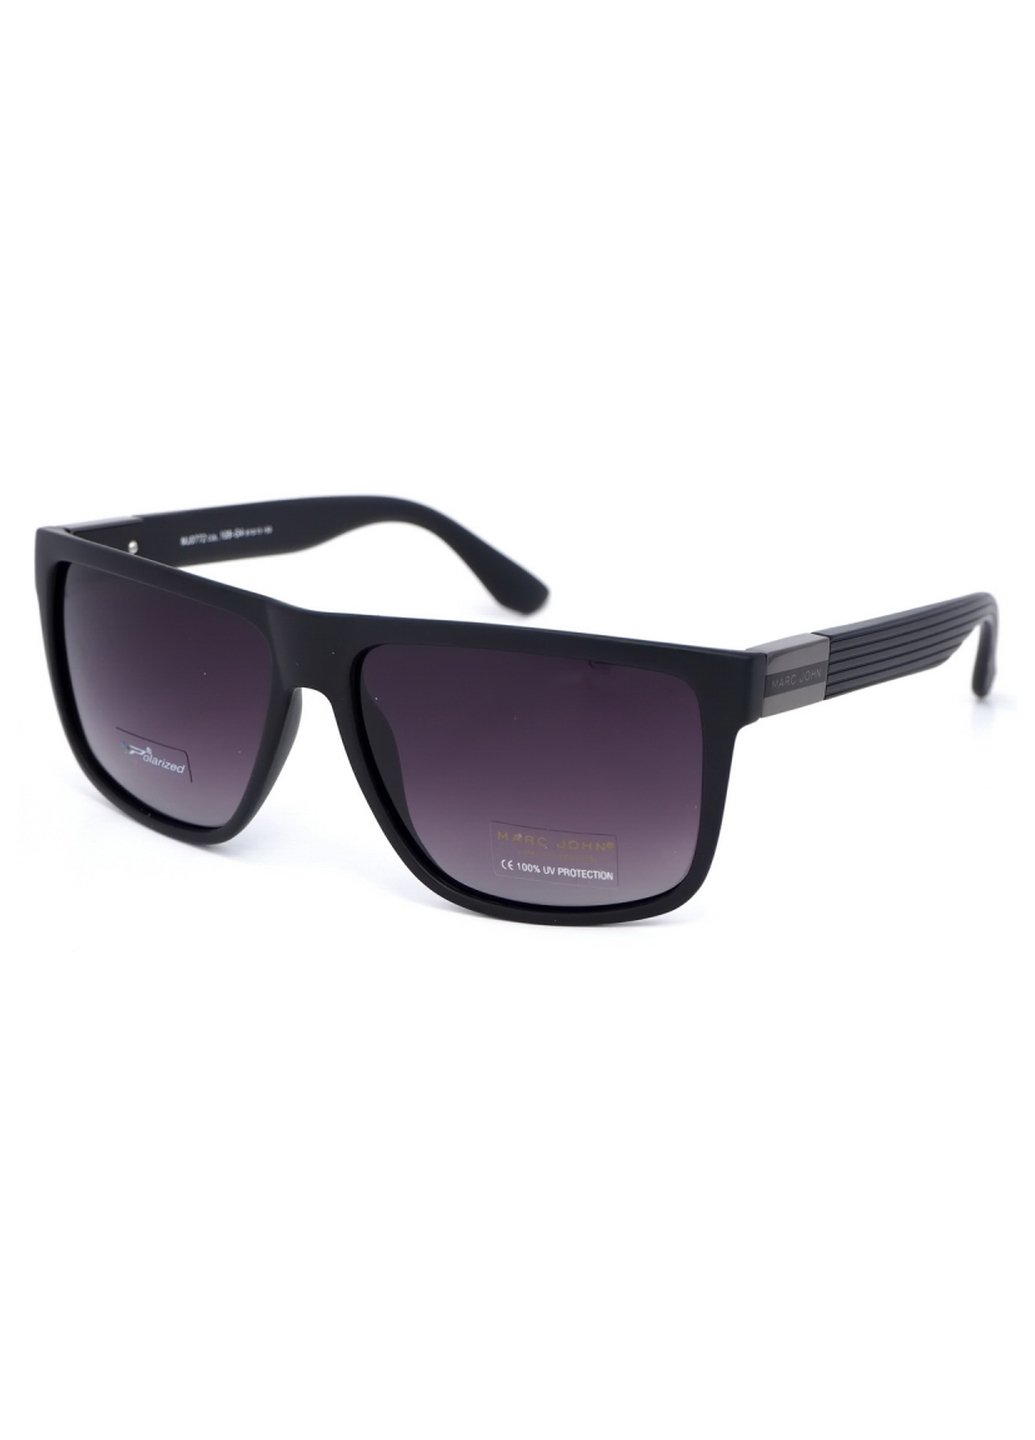 Купить Мужские солнцезащитные очки Marc John с поляризацией MJ0772 190026 - Черный в интернет-магазине